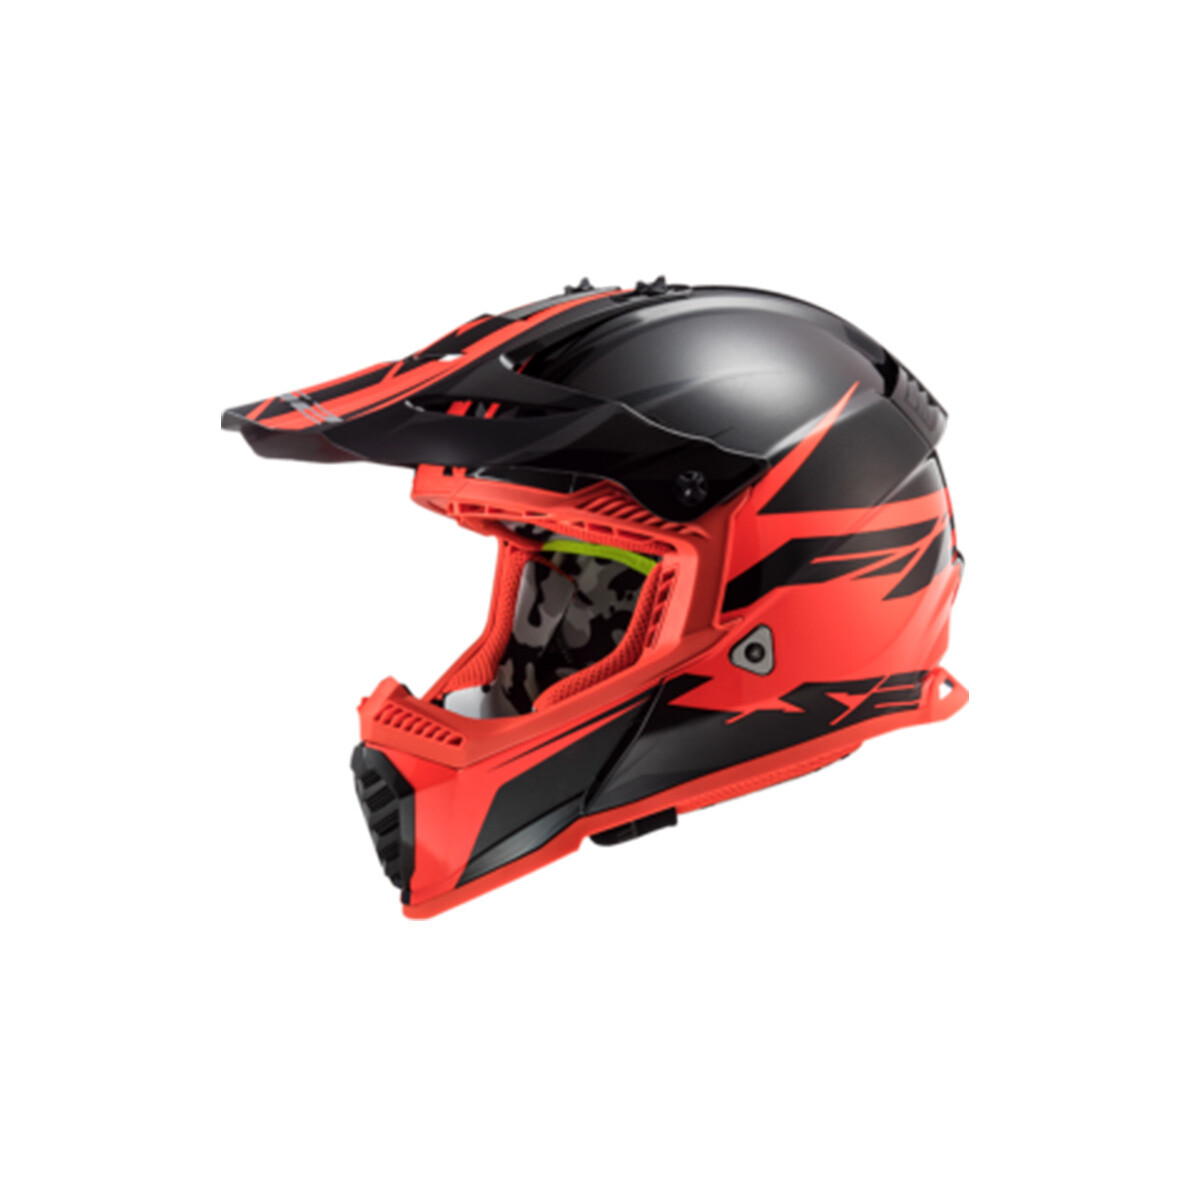 Casco LS2 Fast MX437 - Roar Negro y Rojo 